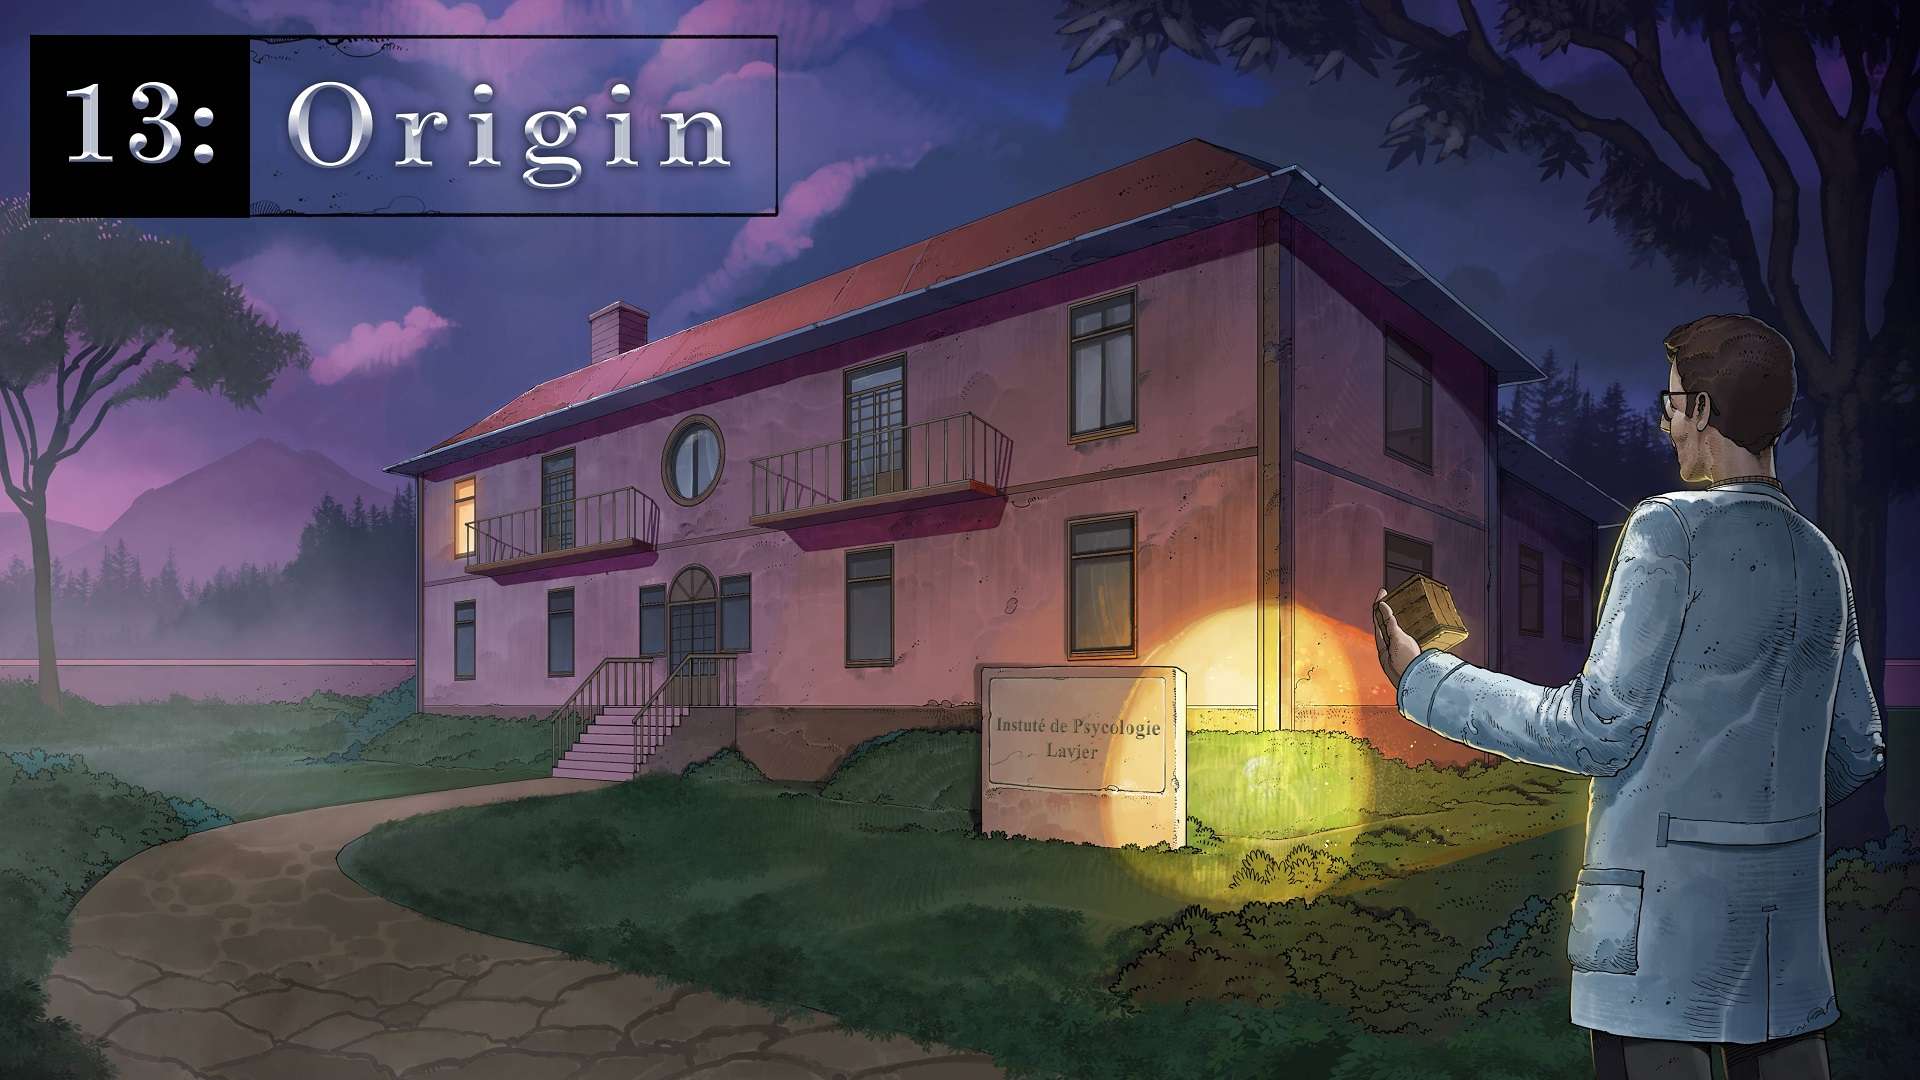 13: Origin